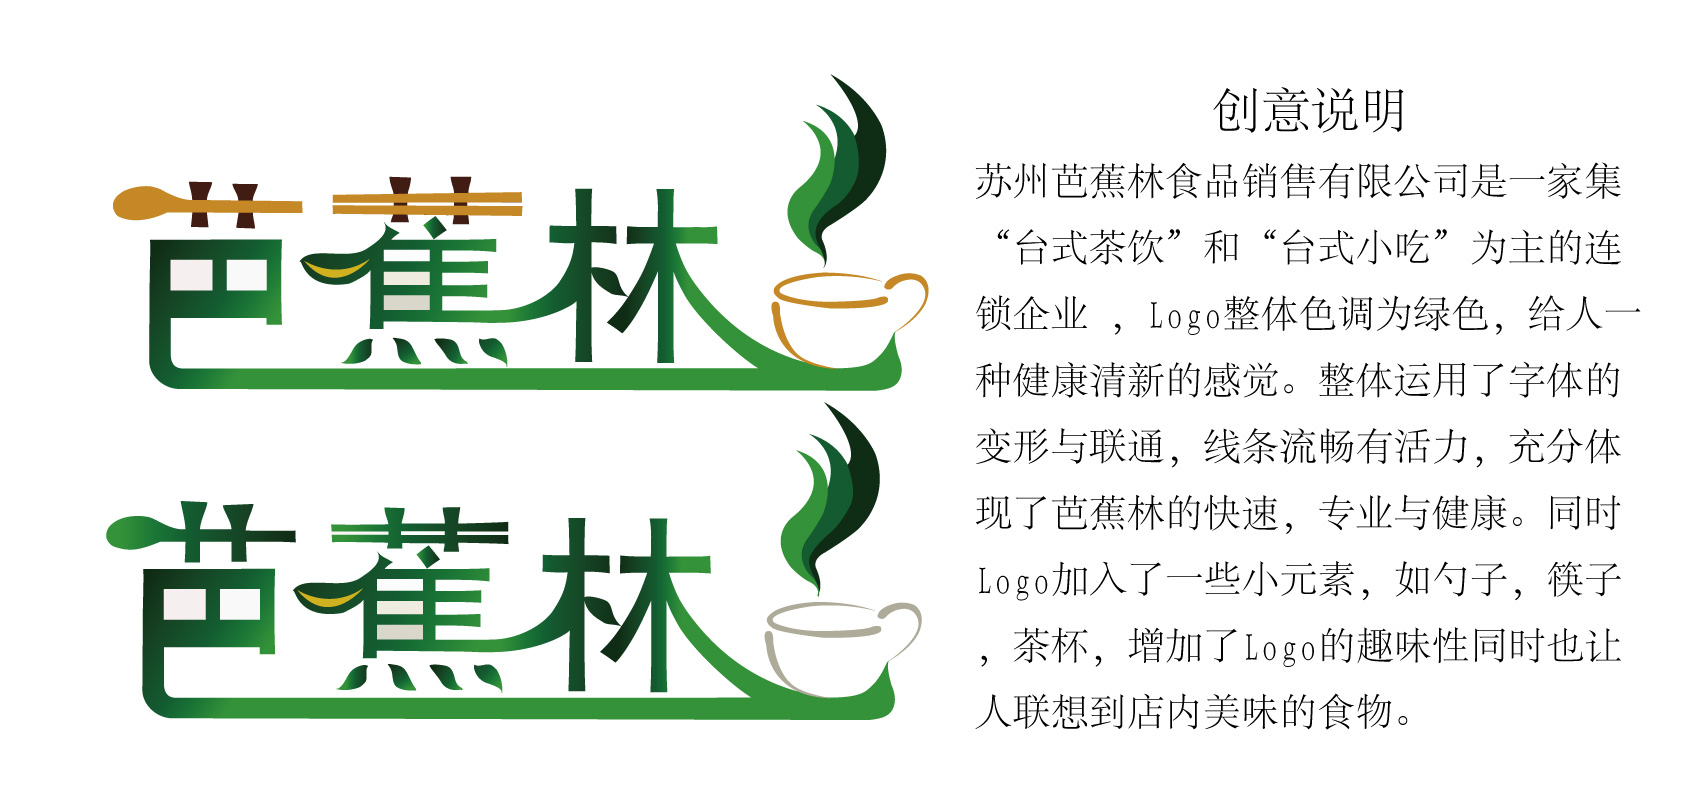 芭蕉林茶饮logo设计,5天定稿加急!